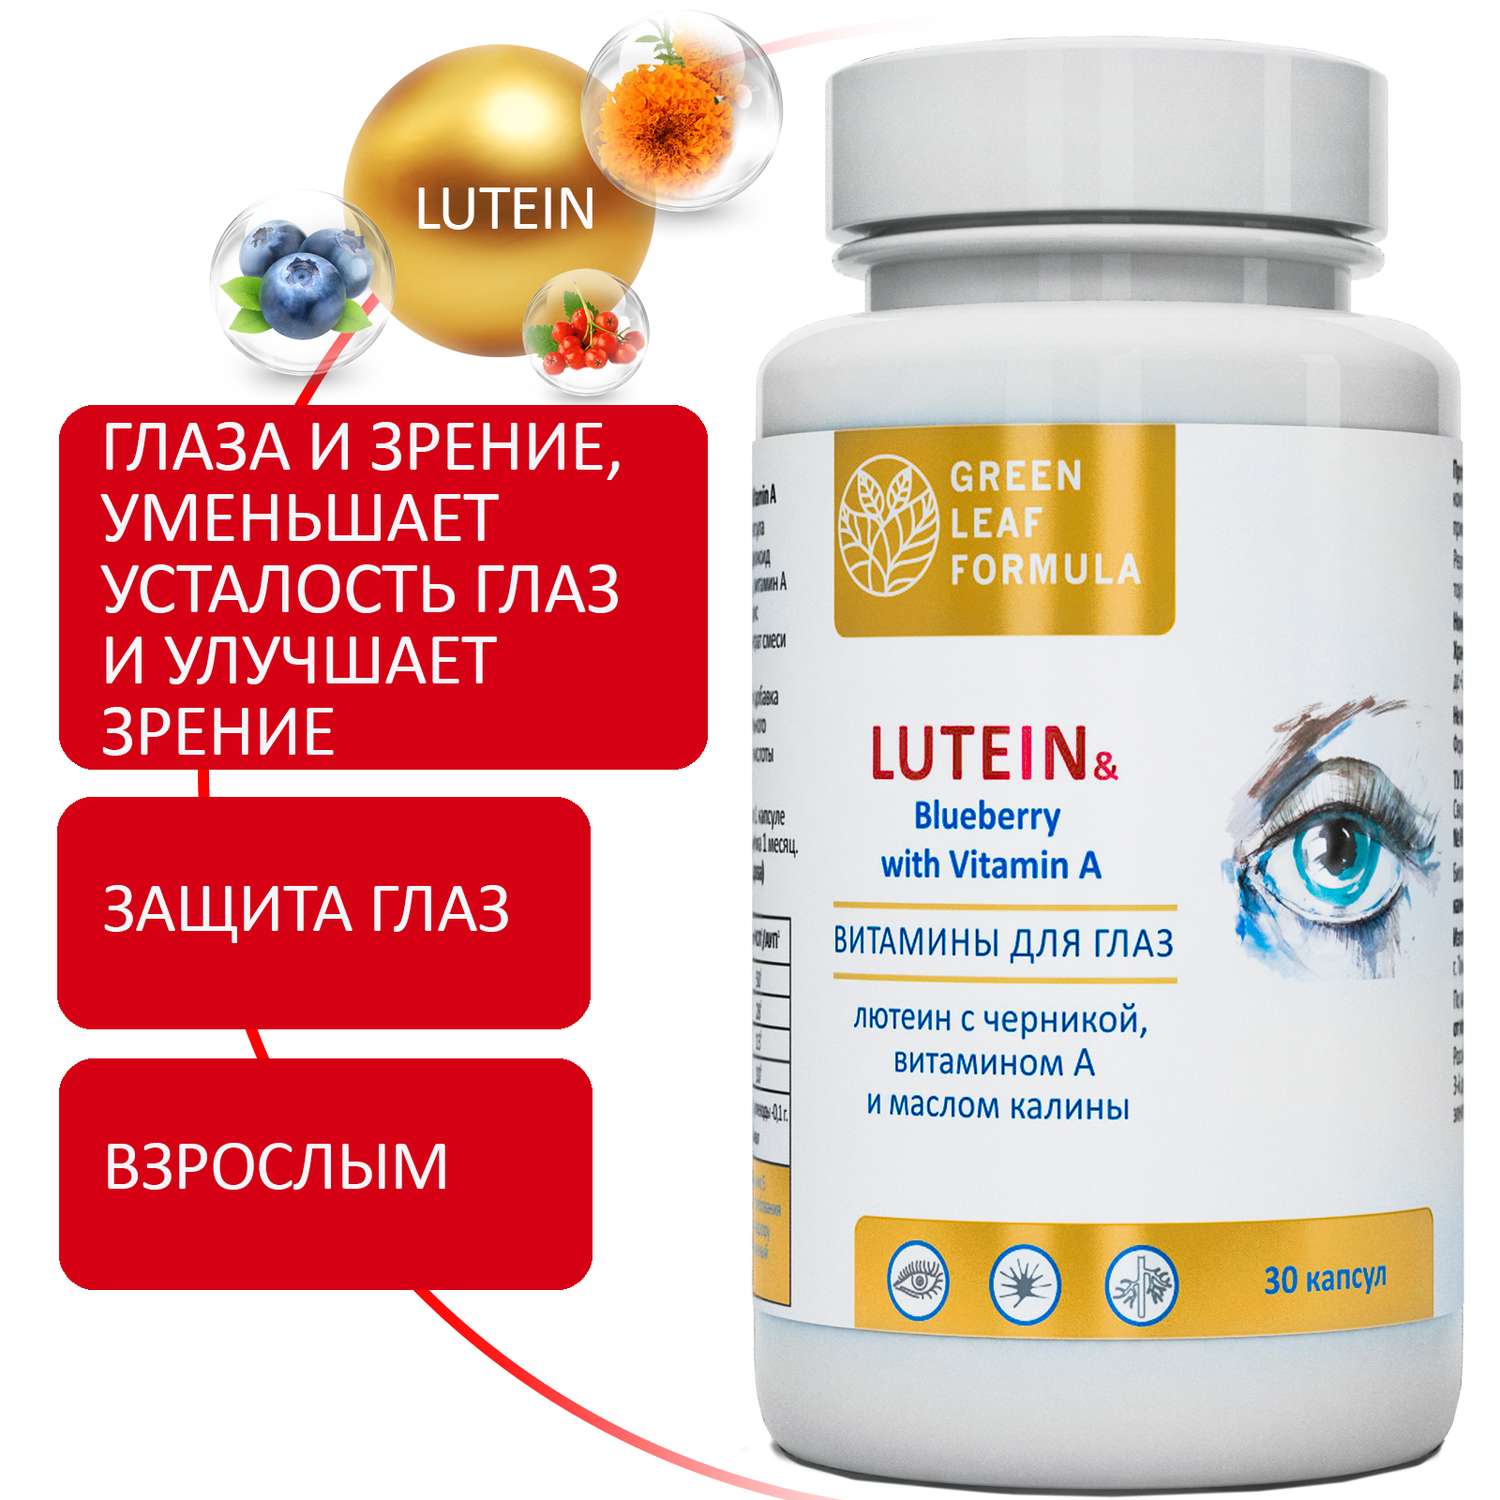 Витамины для глаз и мозга Green Leaf Formula для нервной системы триптофан лютеин комплекс с черникой для глаз 2 банки - фото 10